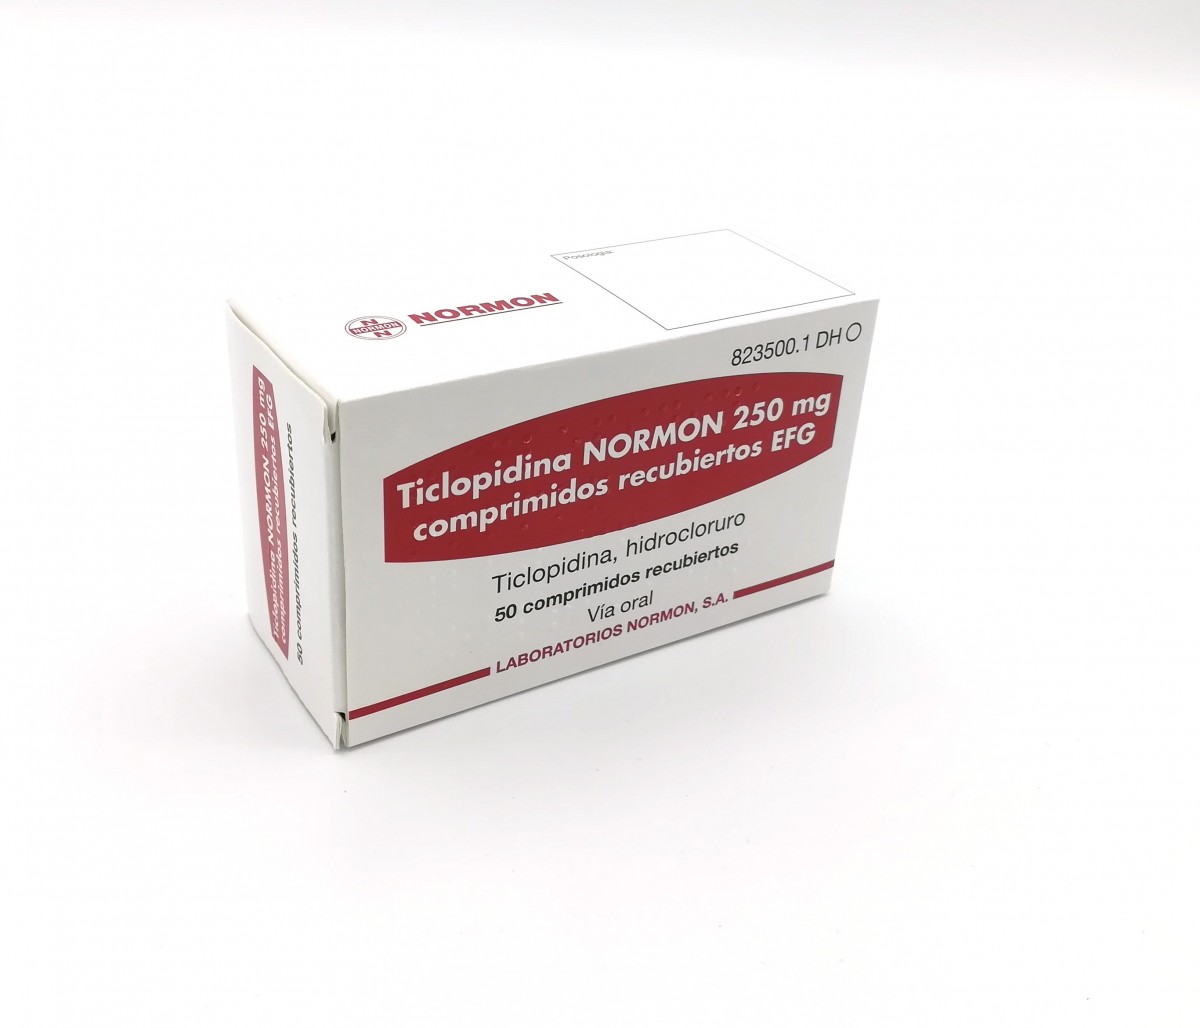 TICLOPIDINA NORMON 250 mg COMPRIMIDOS RECUBIERTOS EFG , 20 comprimidos fotografía del envase.